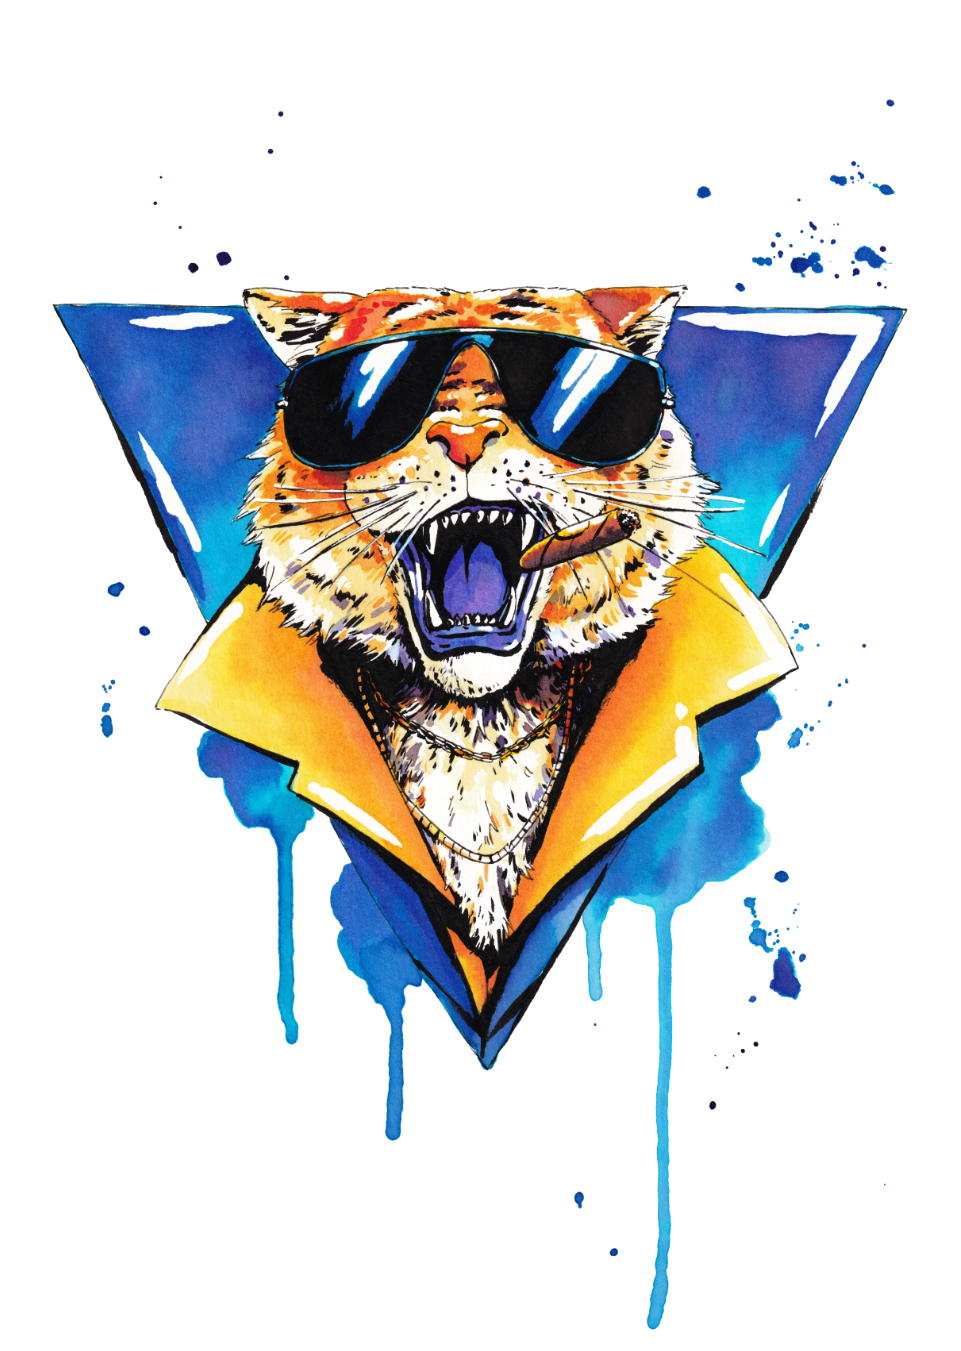 Illustration d'un tigre portant une chemise à col amble, des lunettes de soleil, un cigare dans la gueule, posé sur un triangle bleu.